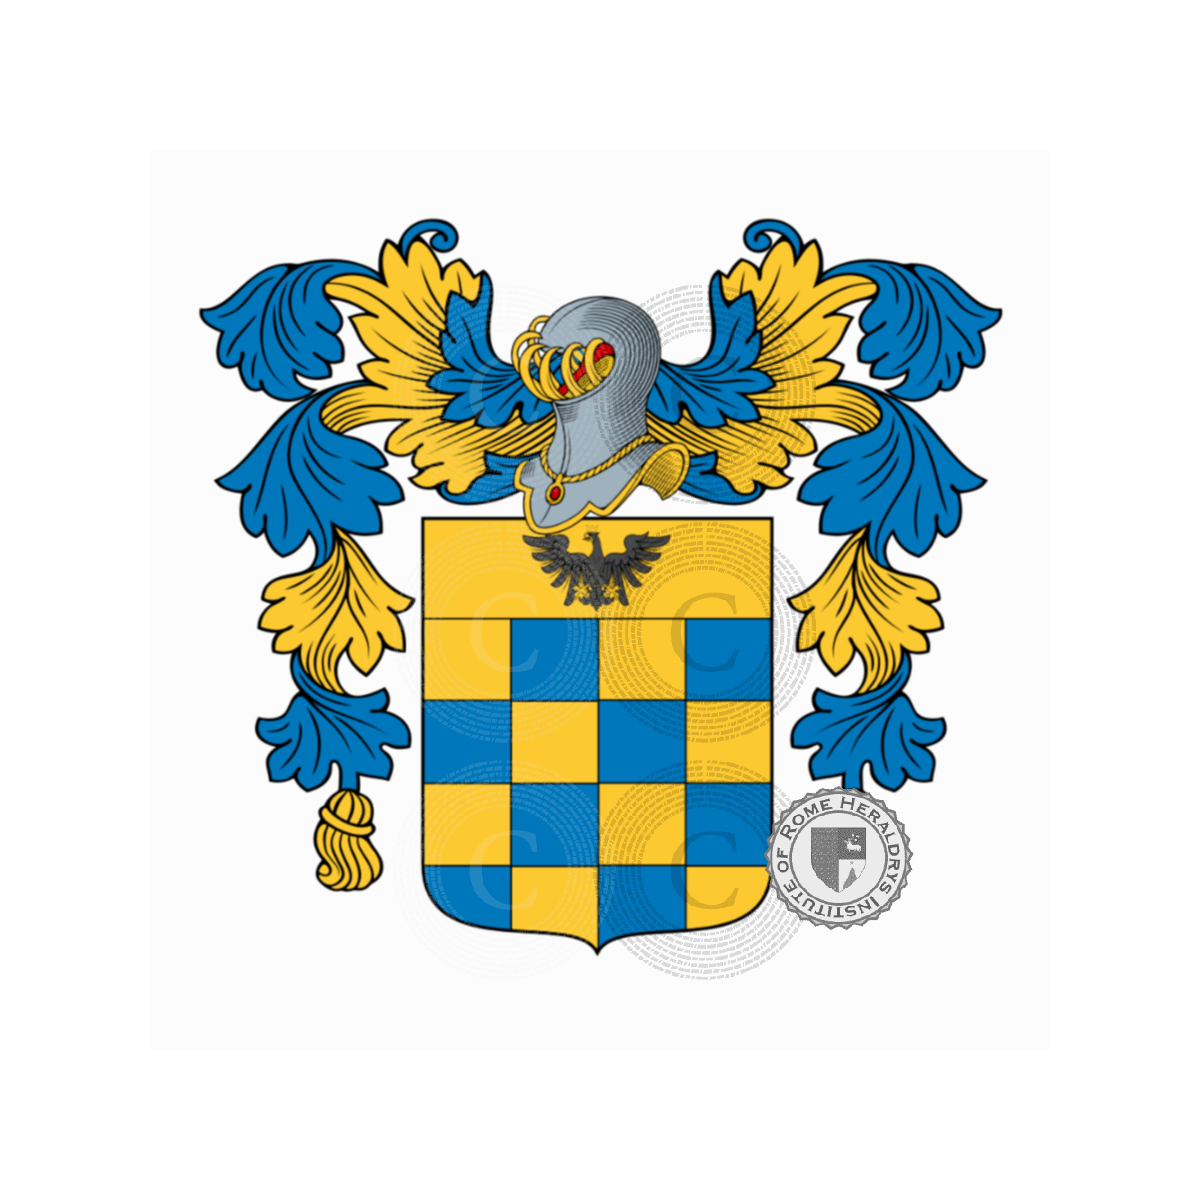 Wappen der Familiede Giorgi, de Giorgi,Georgiani,Georgio,Georgius,Giorgi da Romena,Giorgi de Pons,Giorgi del Lion d'Oro,Giorgiani,Giorgianni,Zorzi